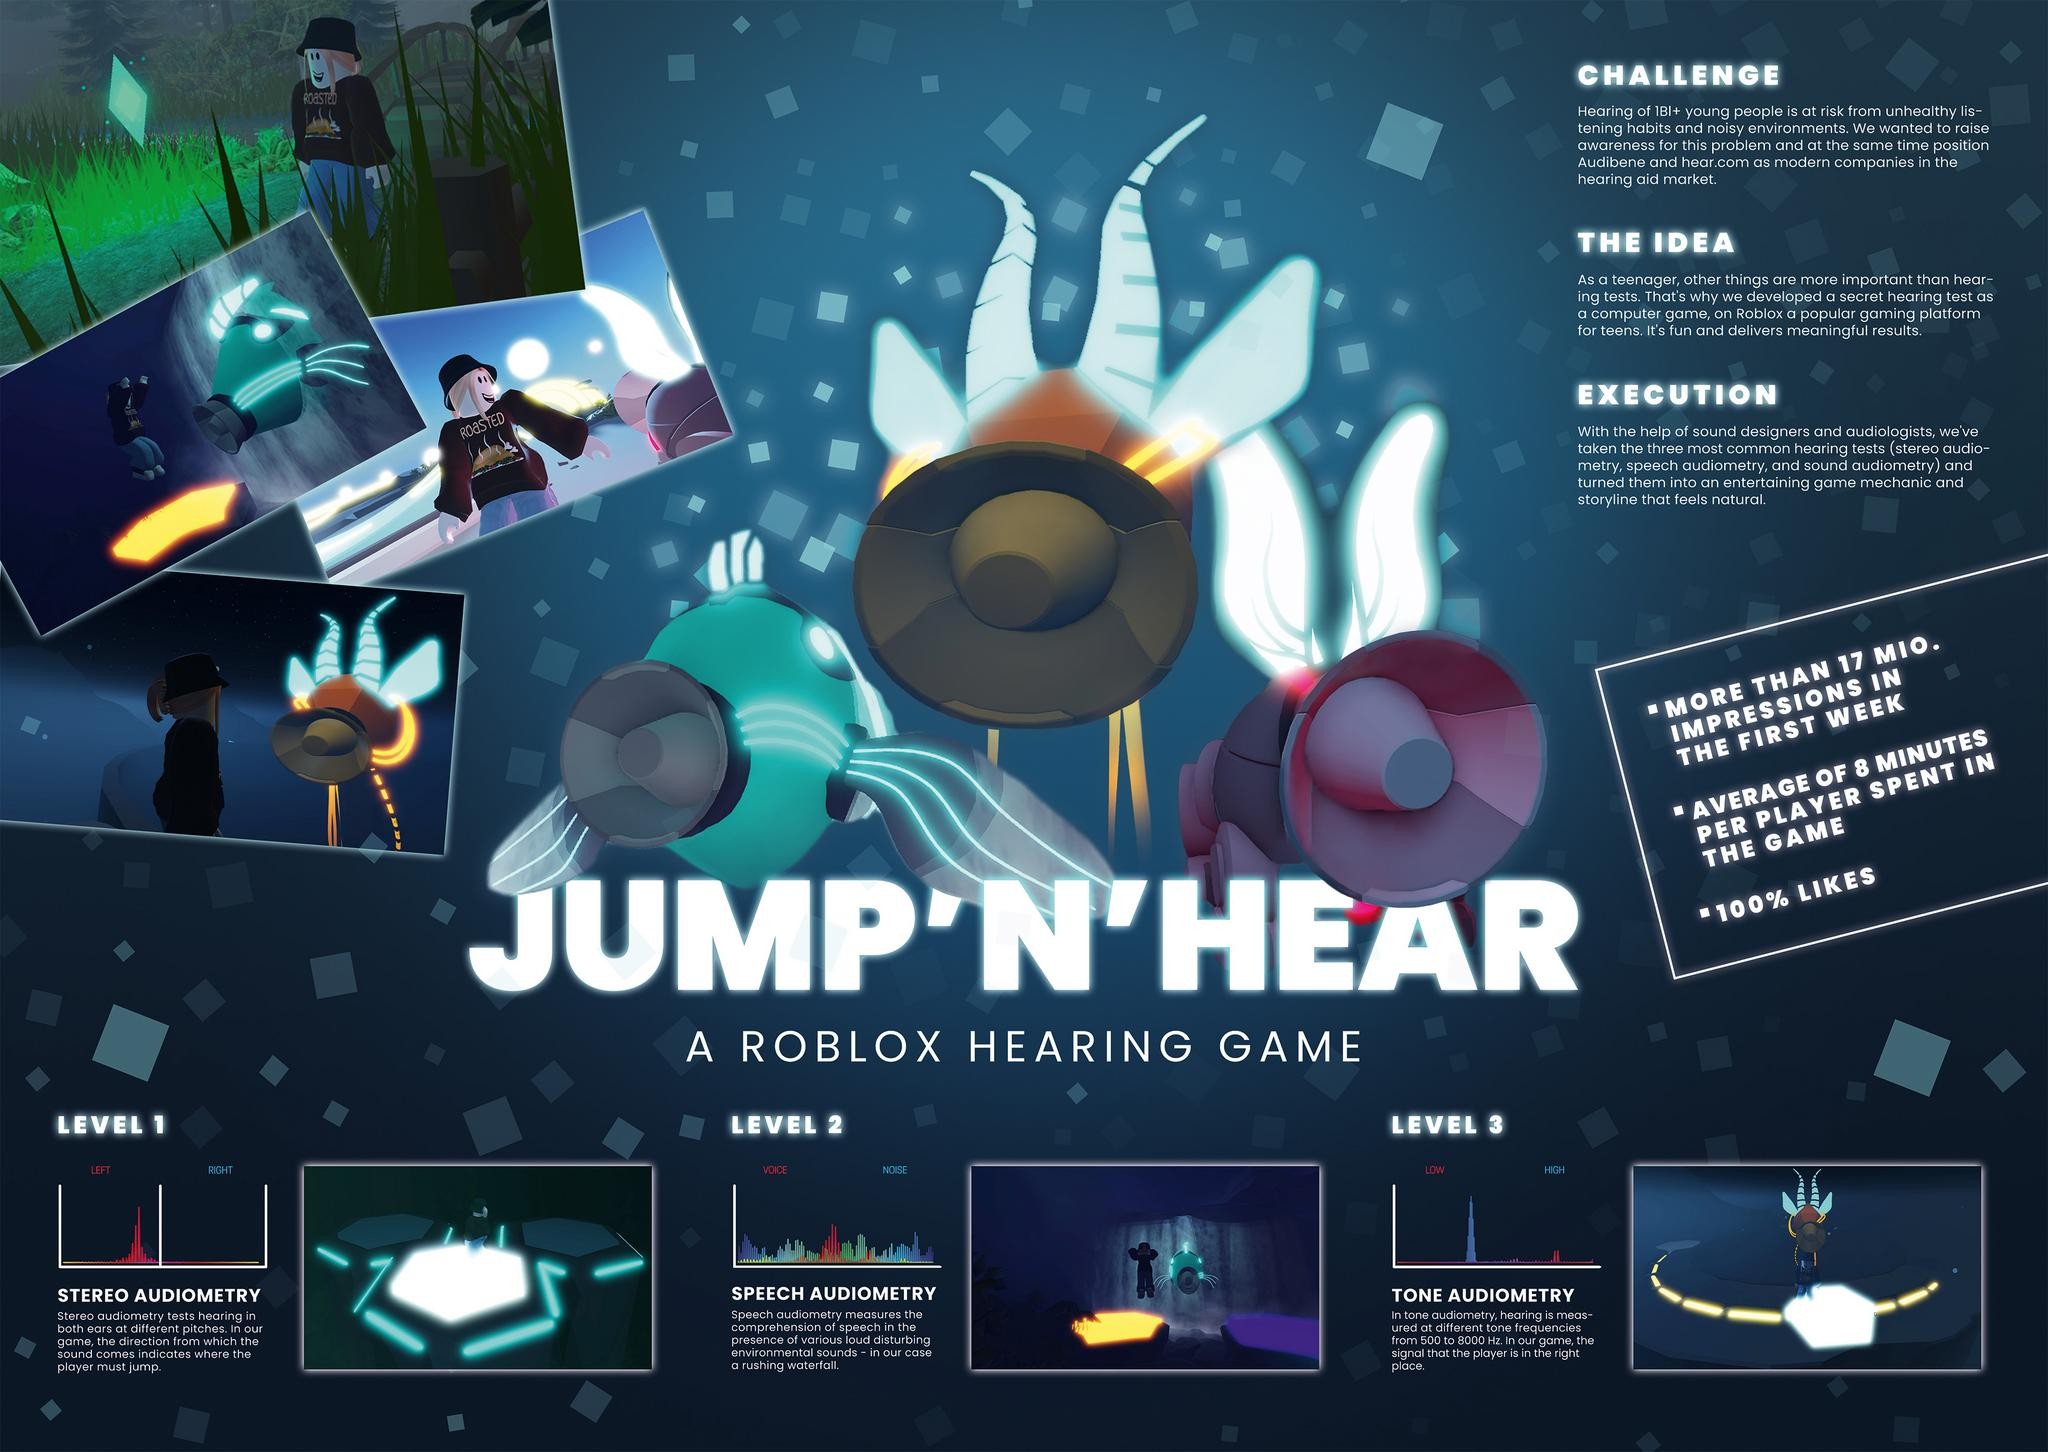 "Jump ’n’ Hear – A Roblox Hearing Game."